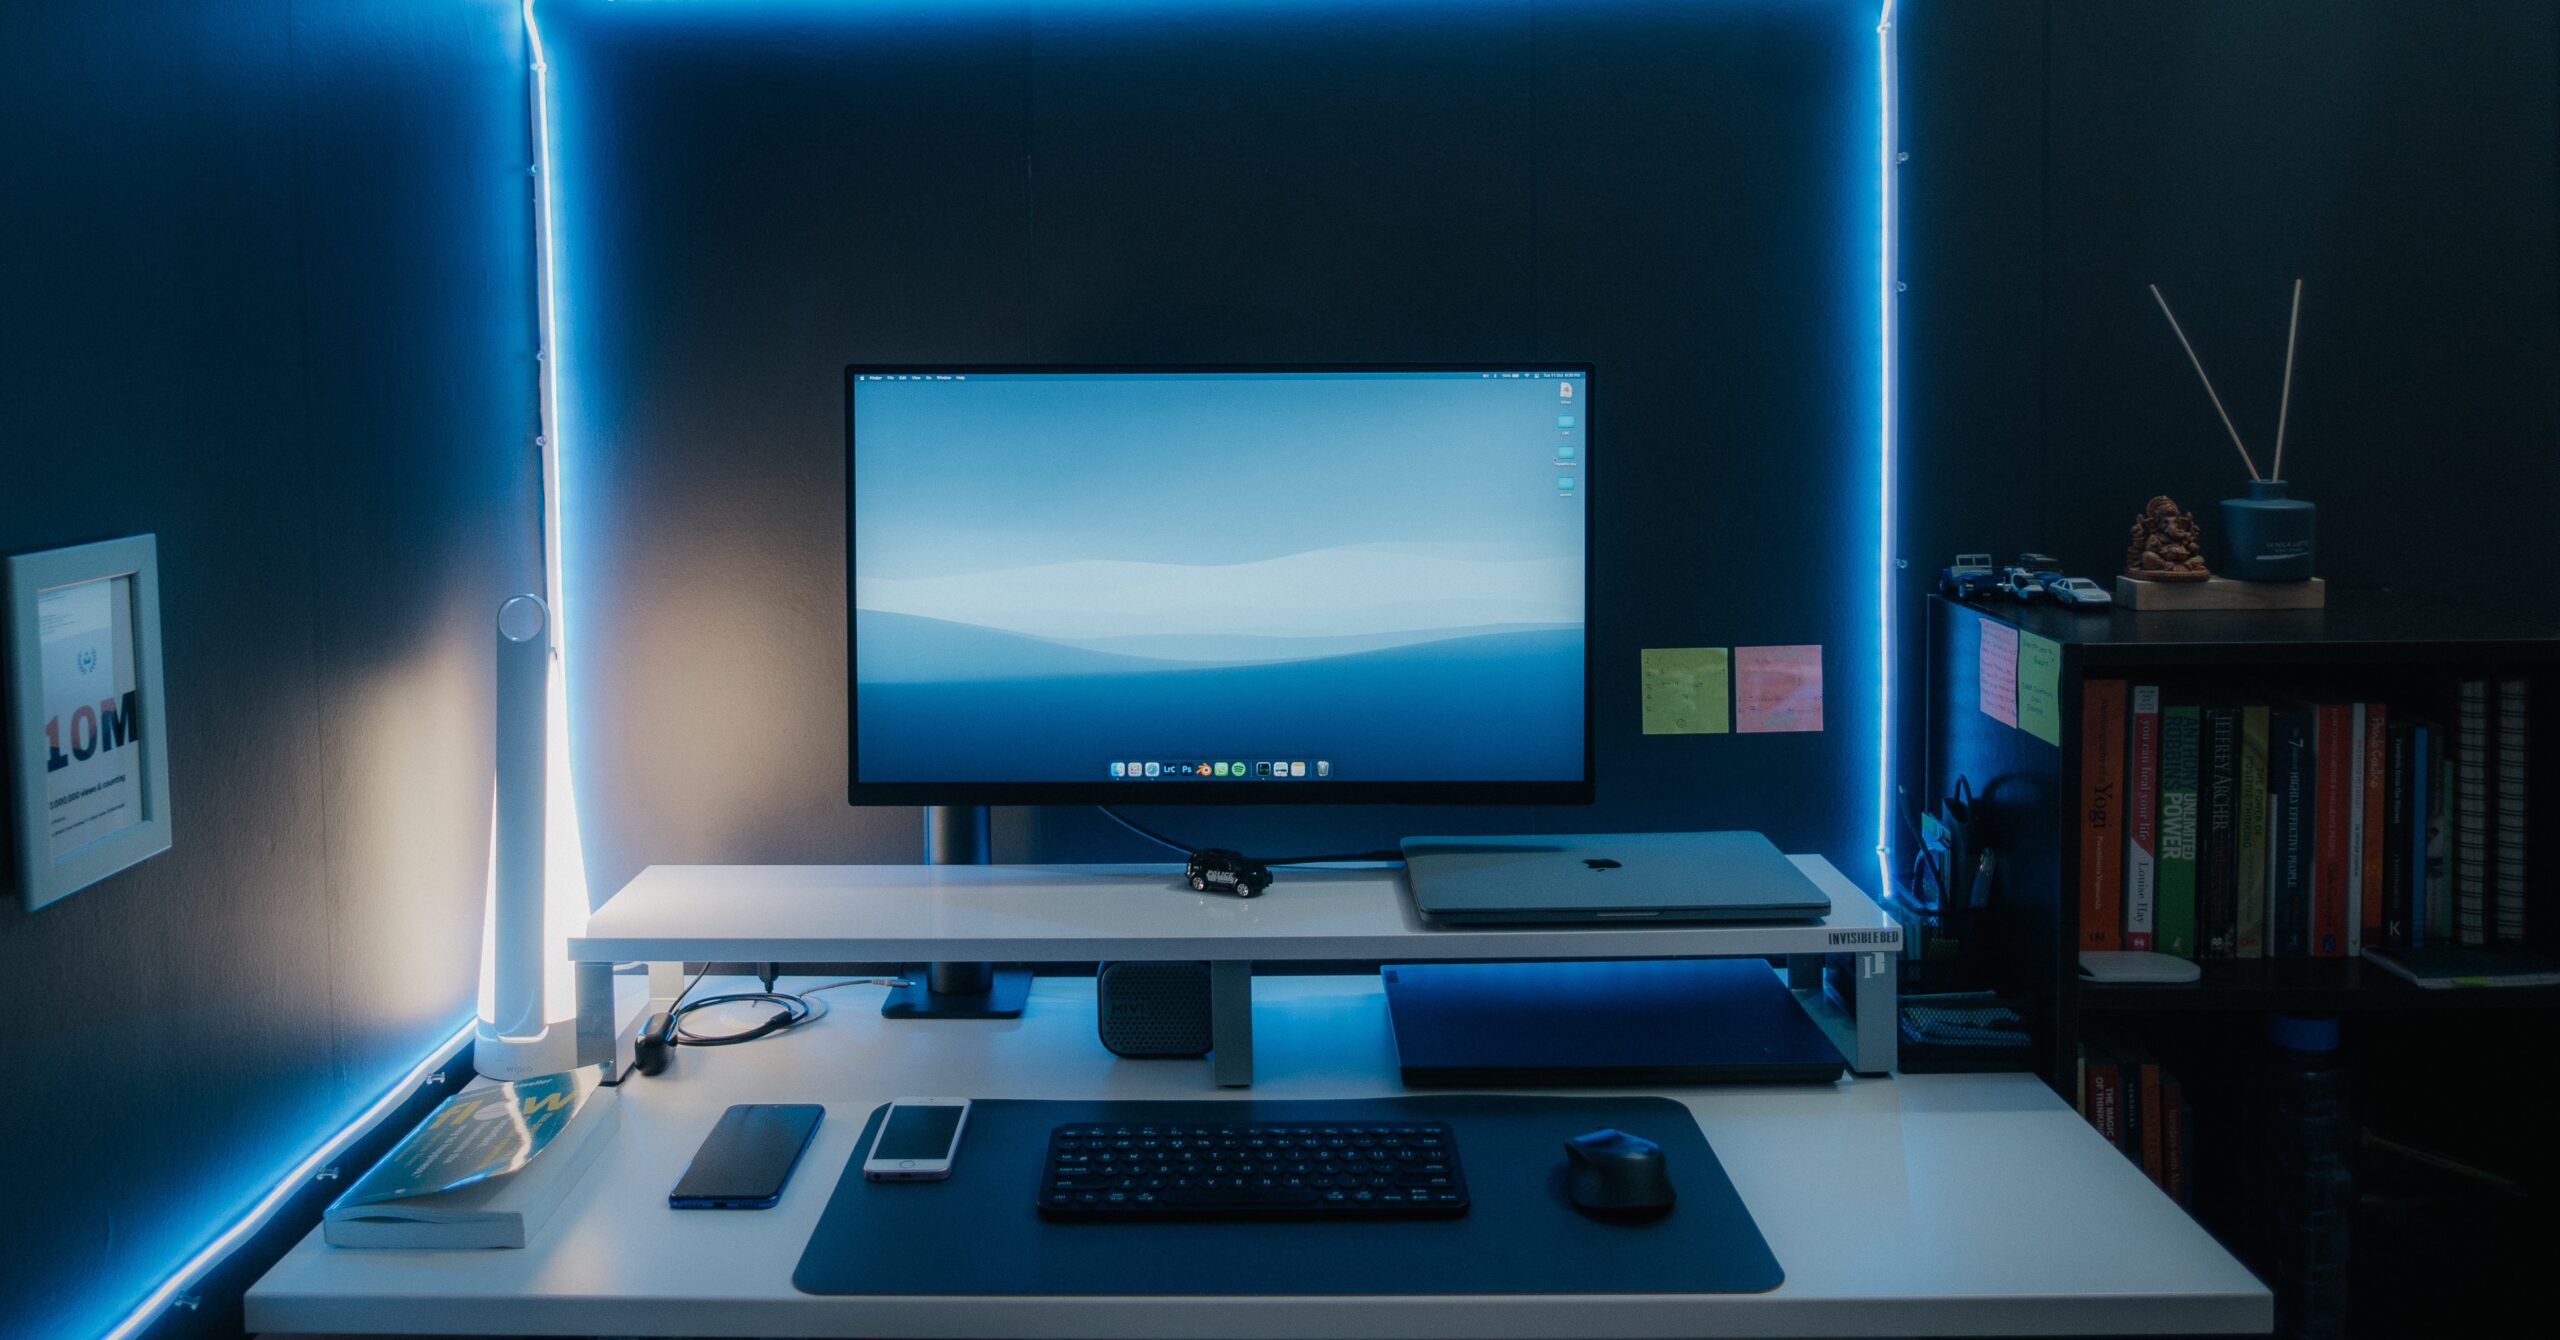 オフィスデスクの上に整然と配置されているPCやキーボードの画像